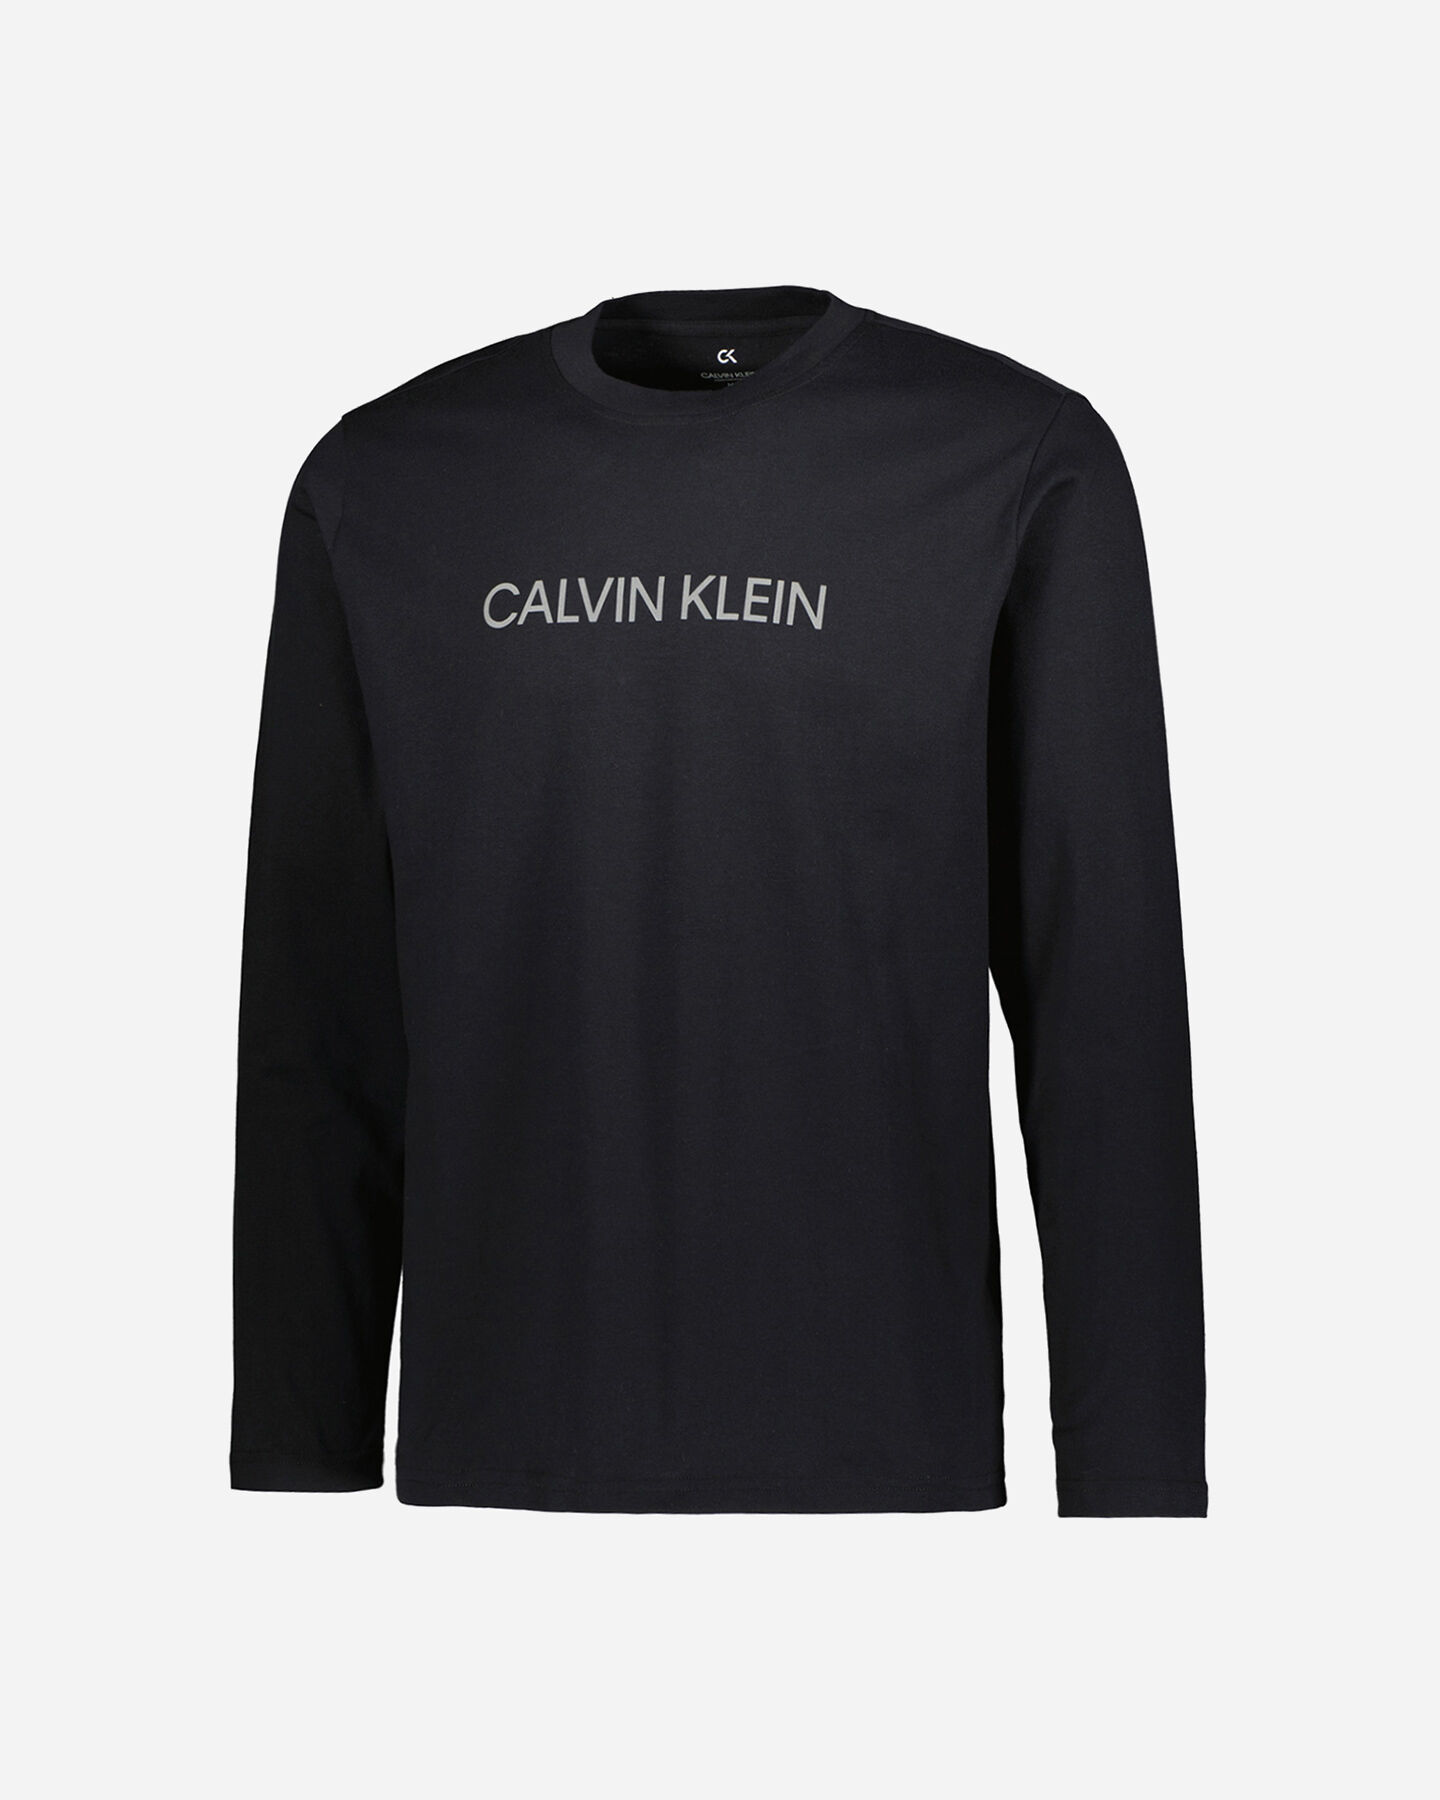  T-Shirt CALVIN KLEIN SPORT ESSENTIAL LOGO M S4100255|001|S scatto 0